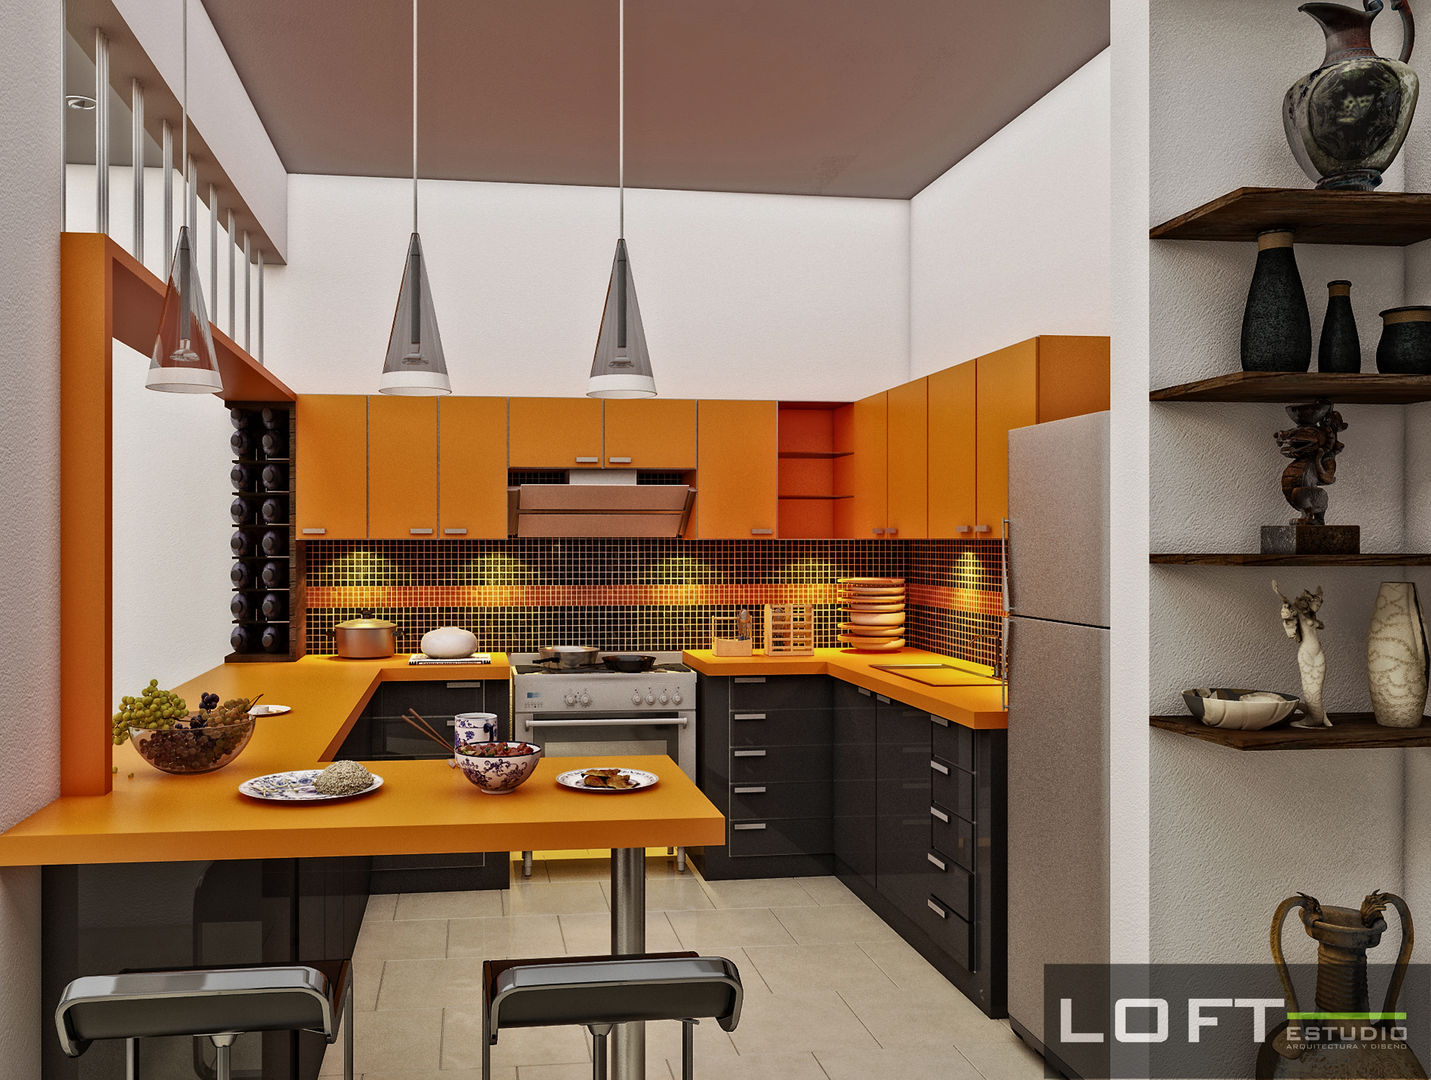 Cocina LOFT ESTUDIO arquitectura y diseño Cocinas modernas Aglomerado Cocina,naranja,gris